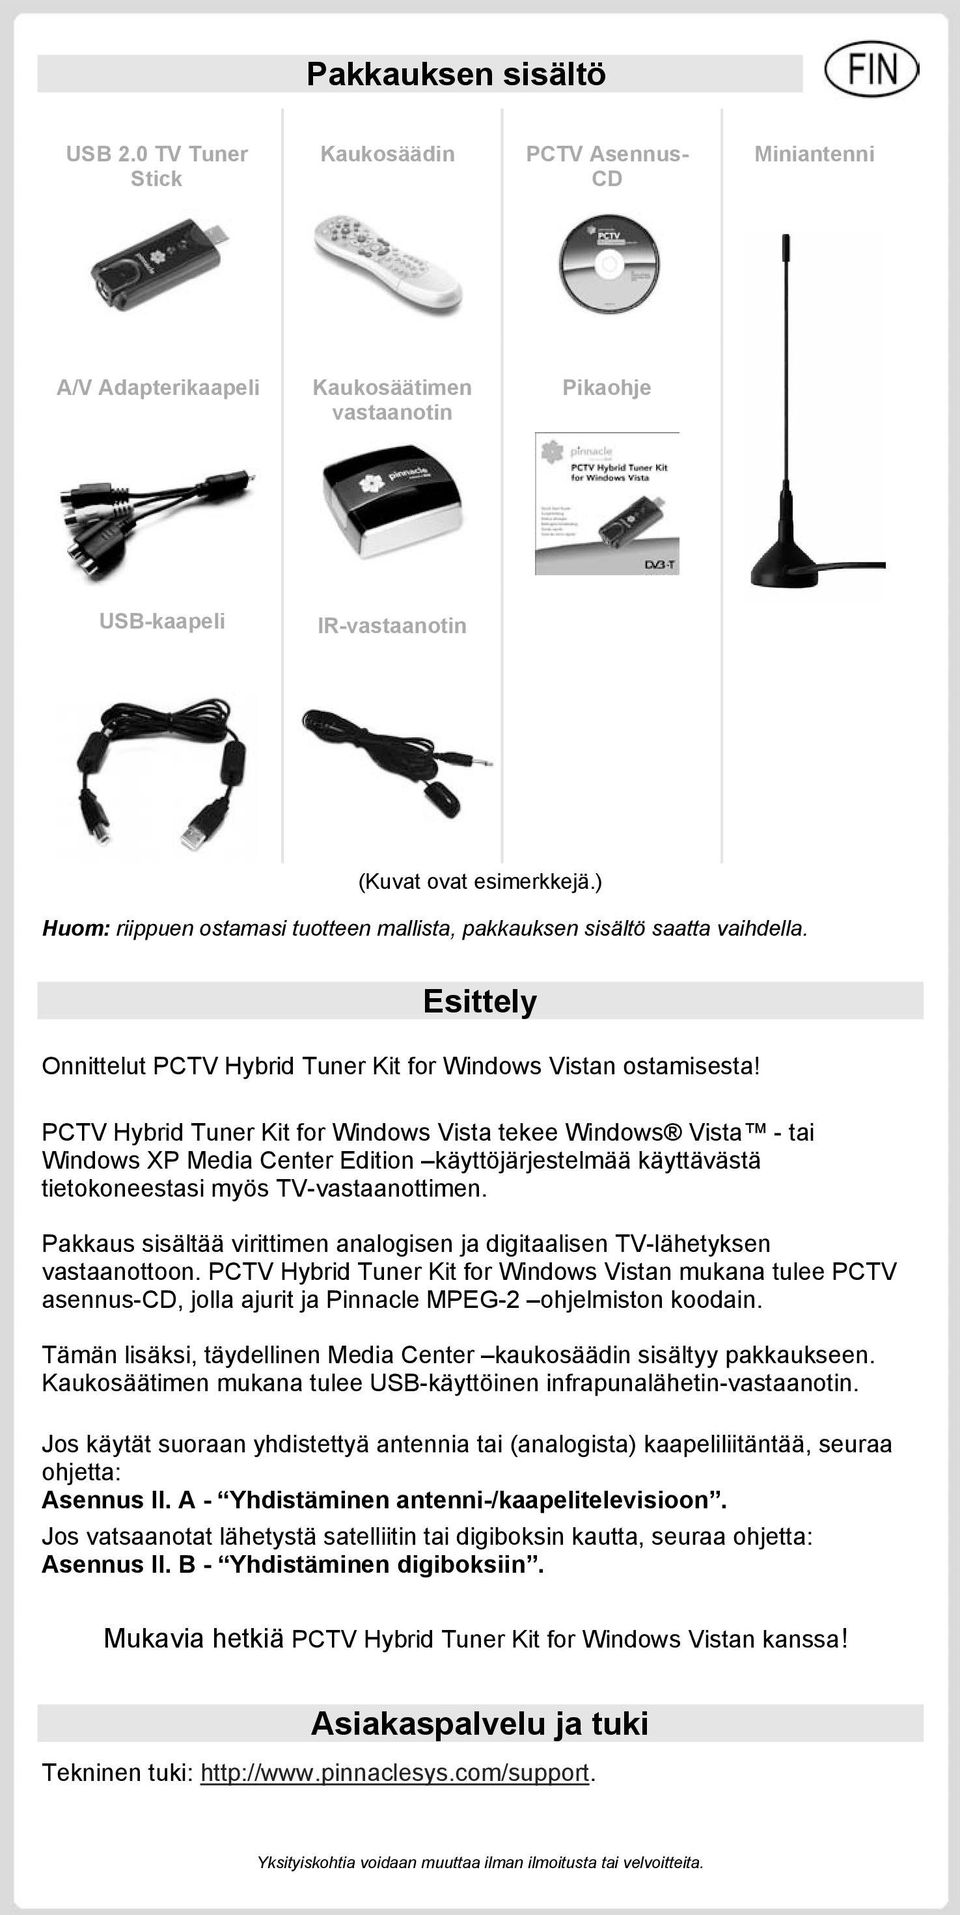 PCTV Hybrid Tuner Kit for Windows Vista tekee Windows Vista - tai Windows XP Media Center Edition käyttöjärjestelmää käyttävästä tietokoneestasi myös TV-vastaanottimen.